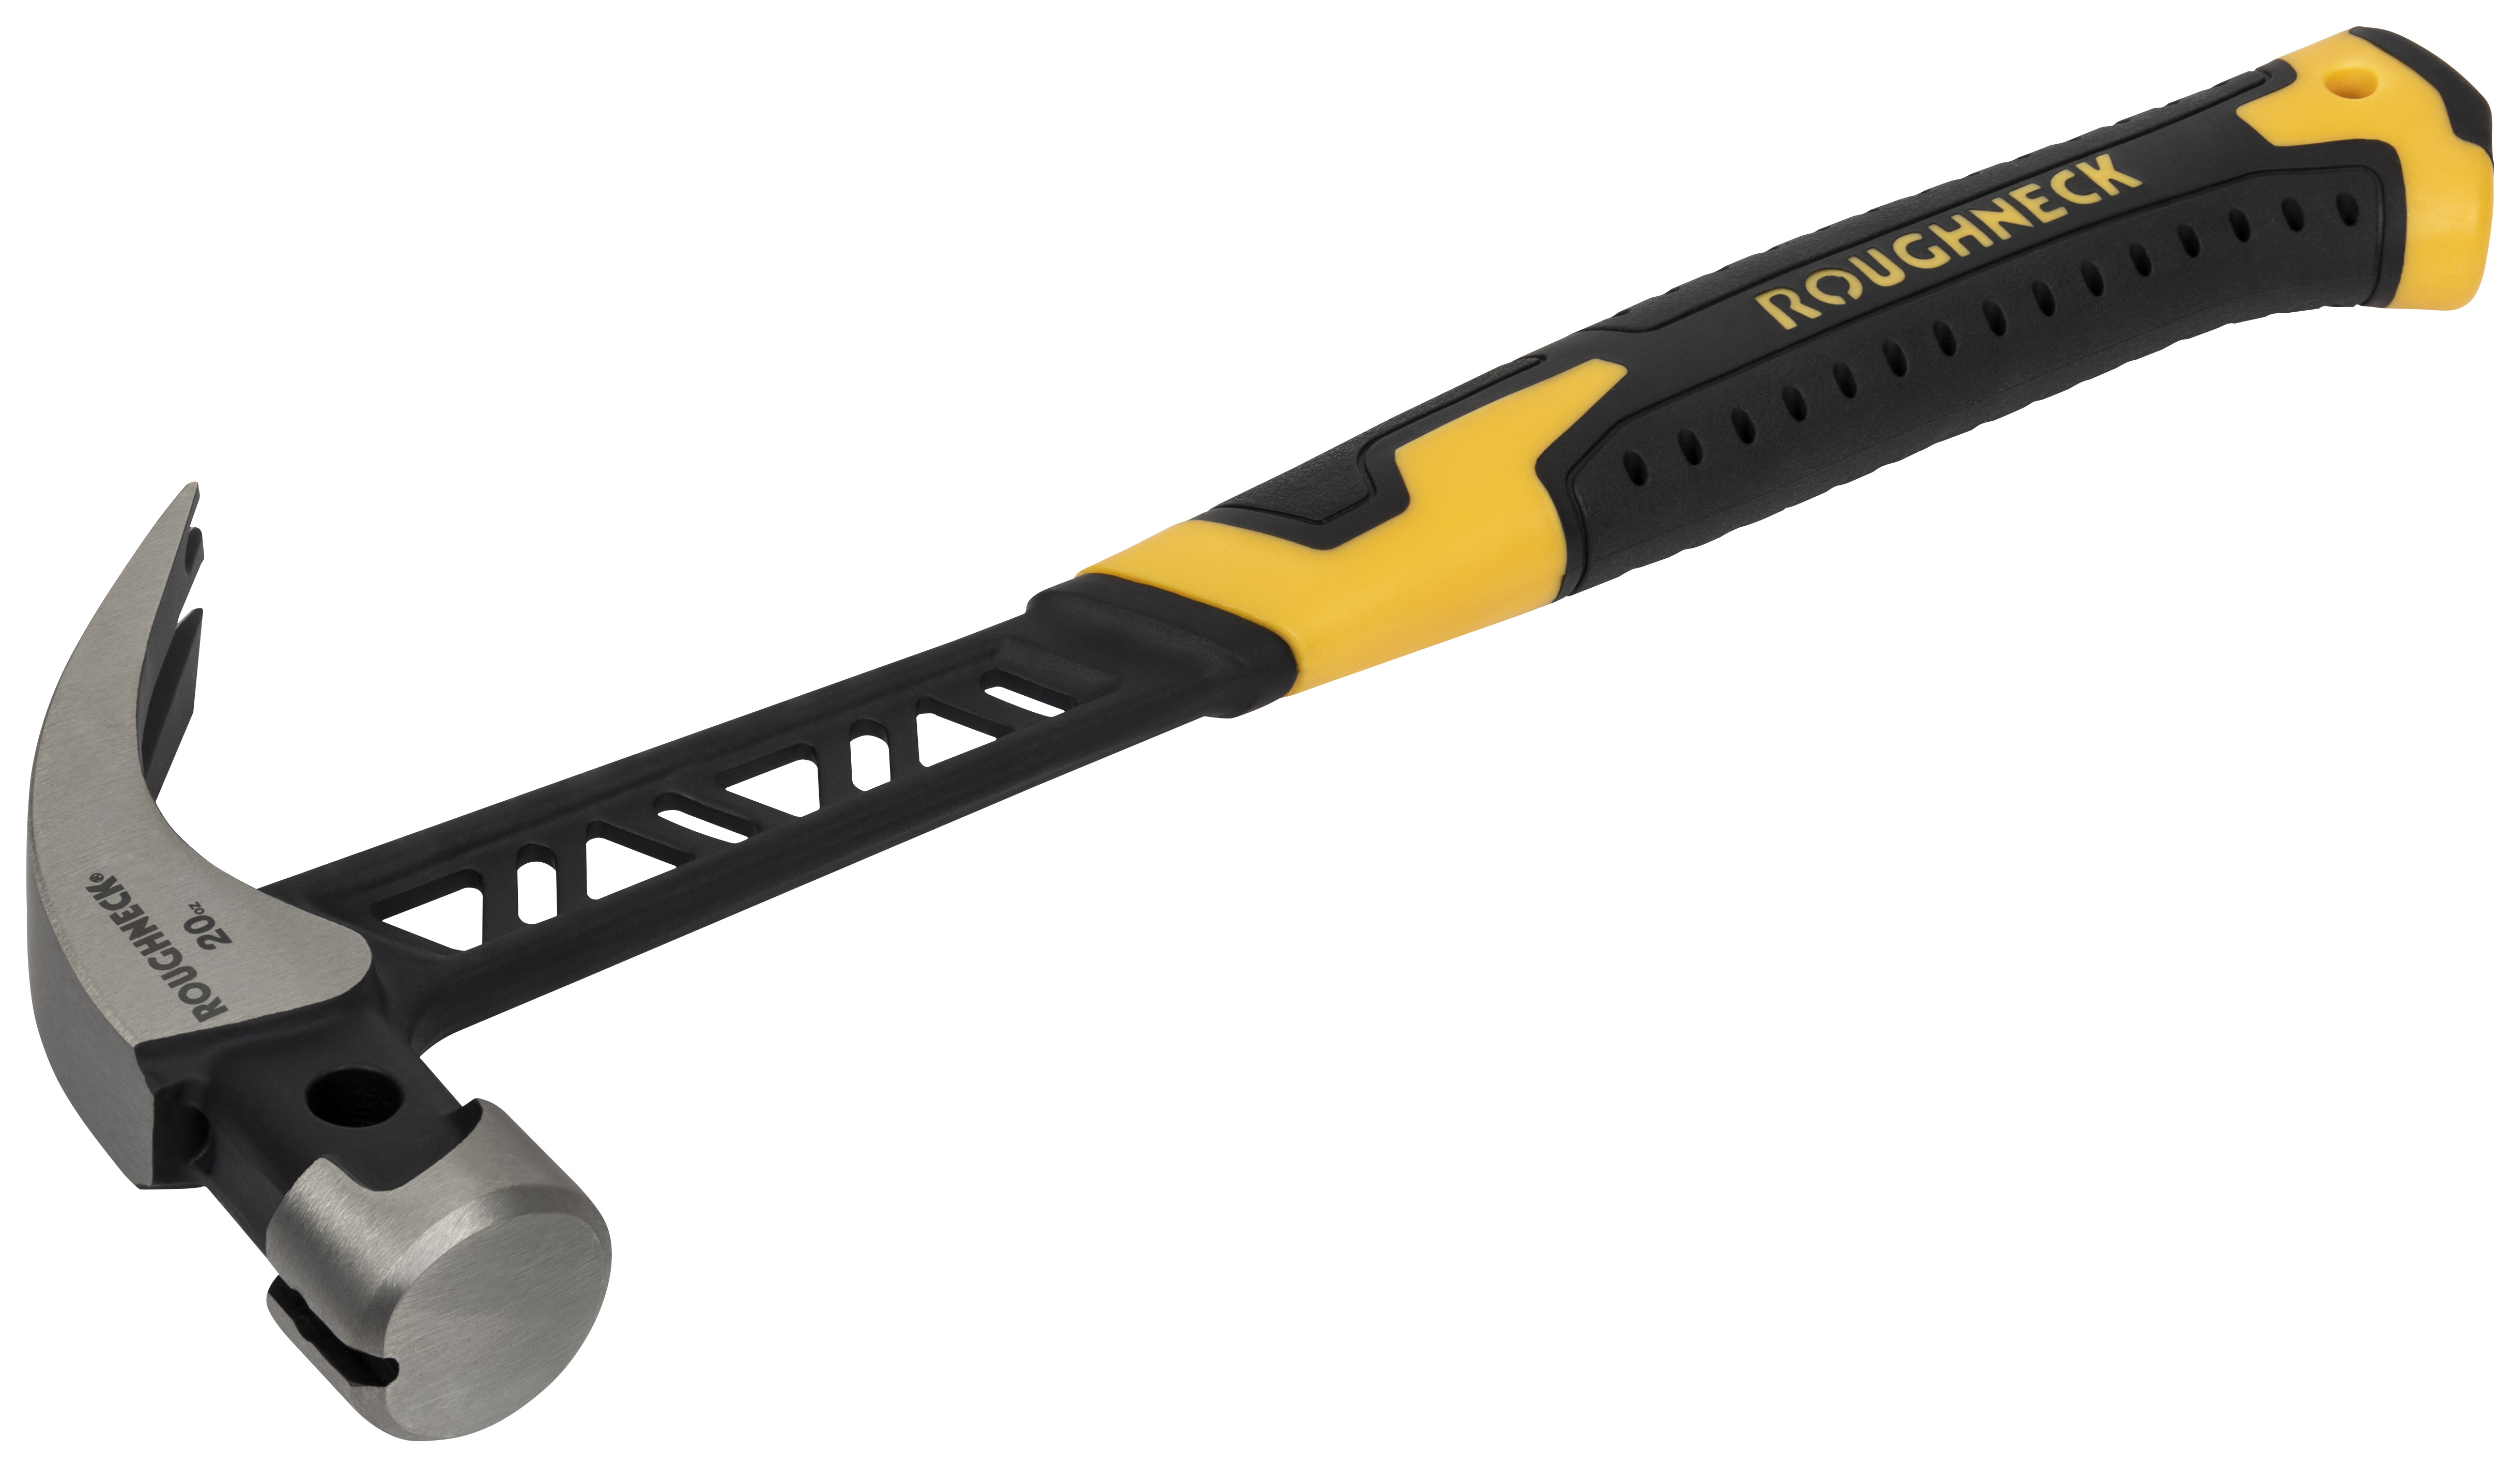 Roughneck Gorilla 11-010 V-Series Claw Hammer - 20oz